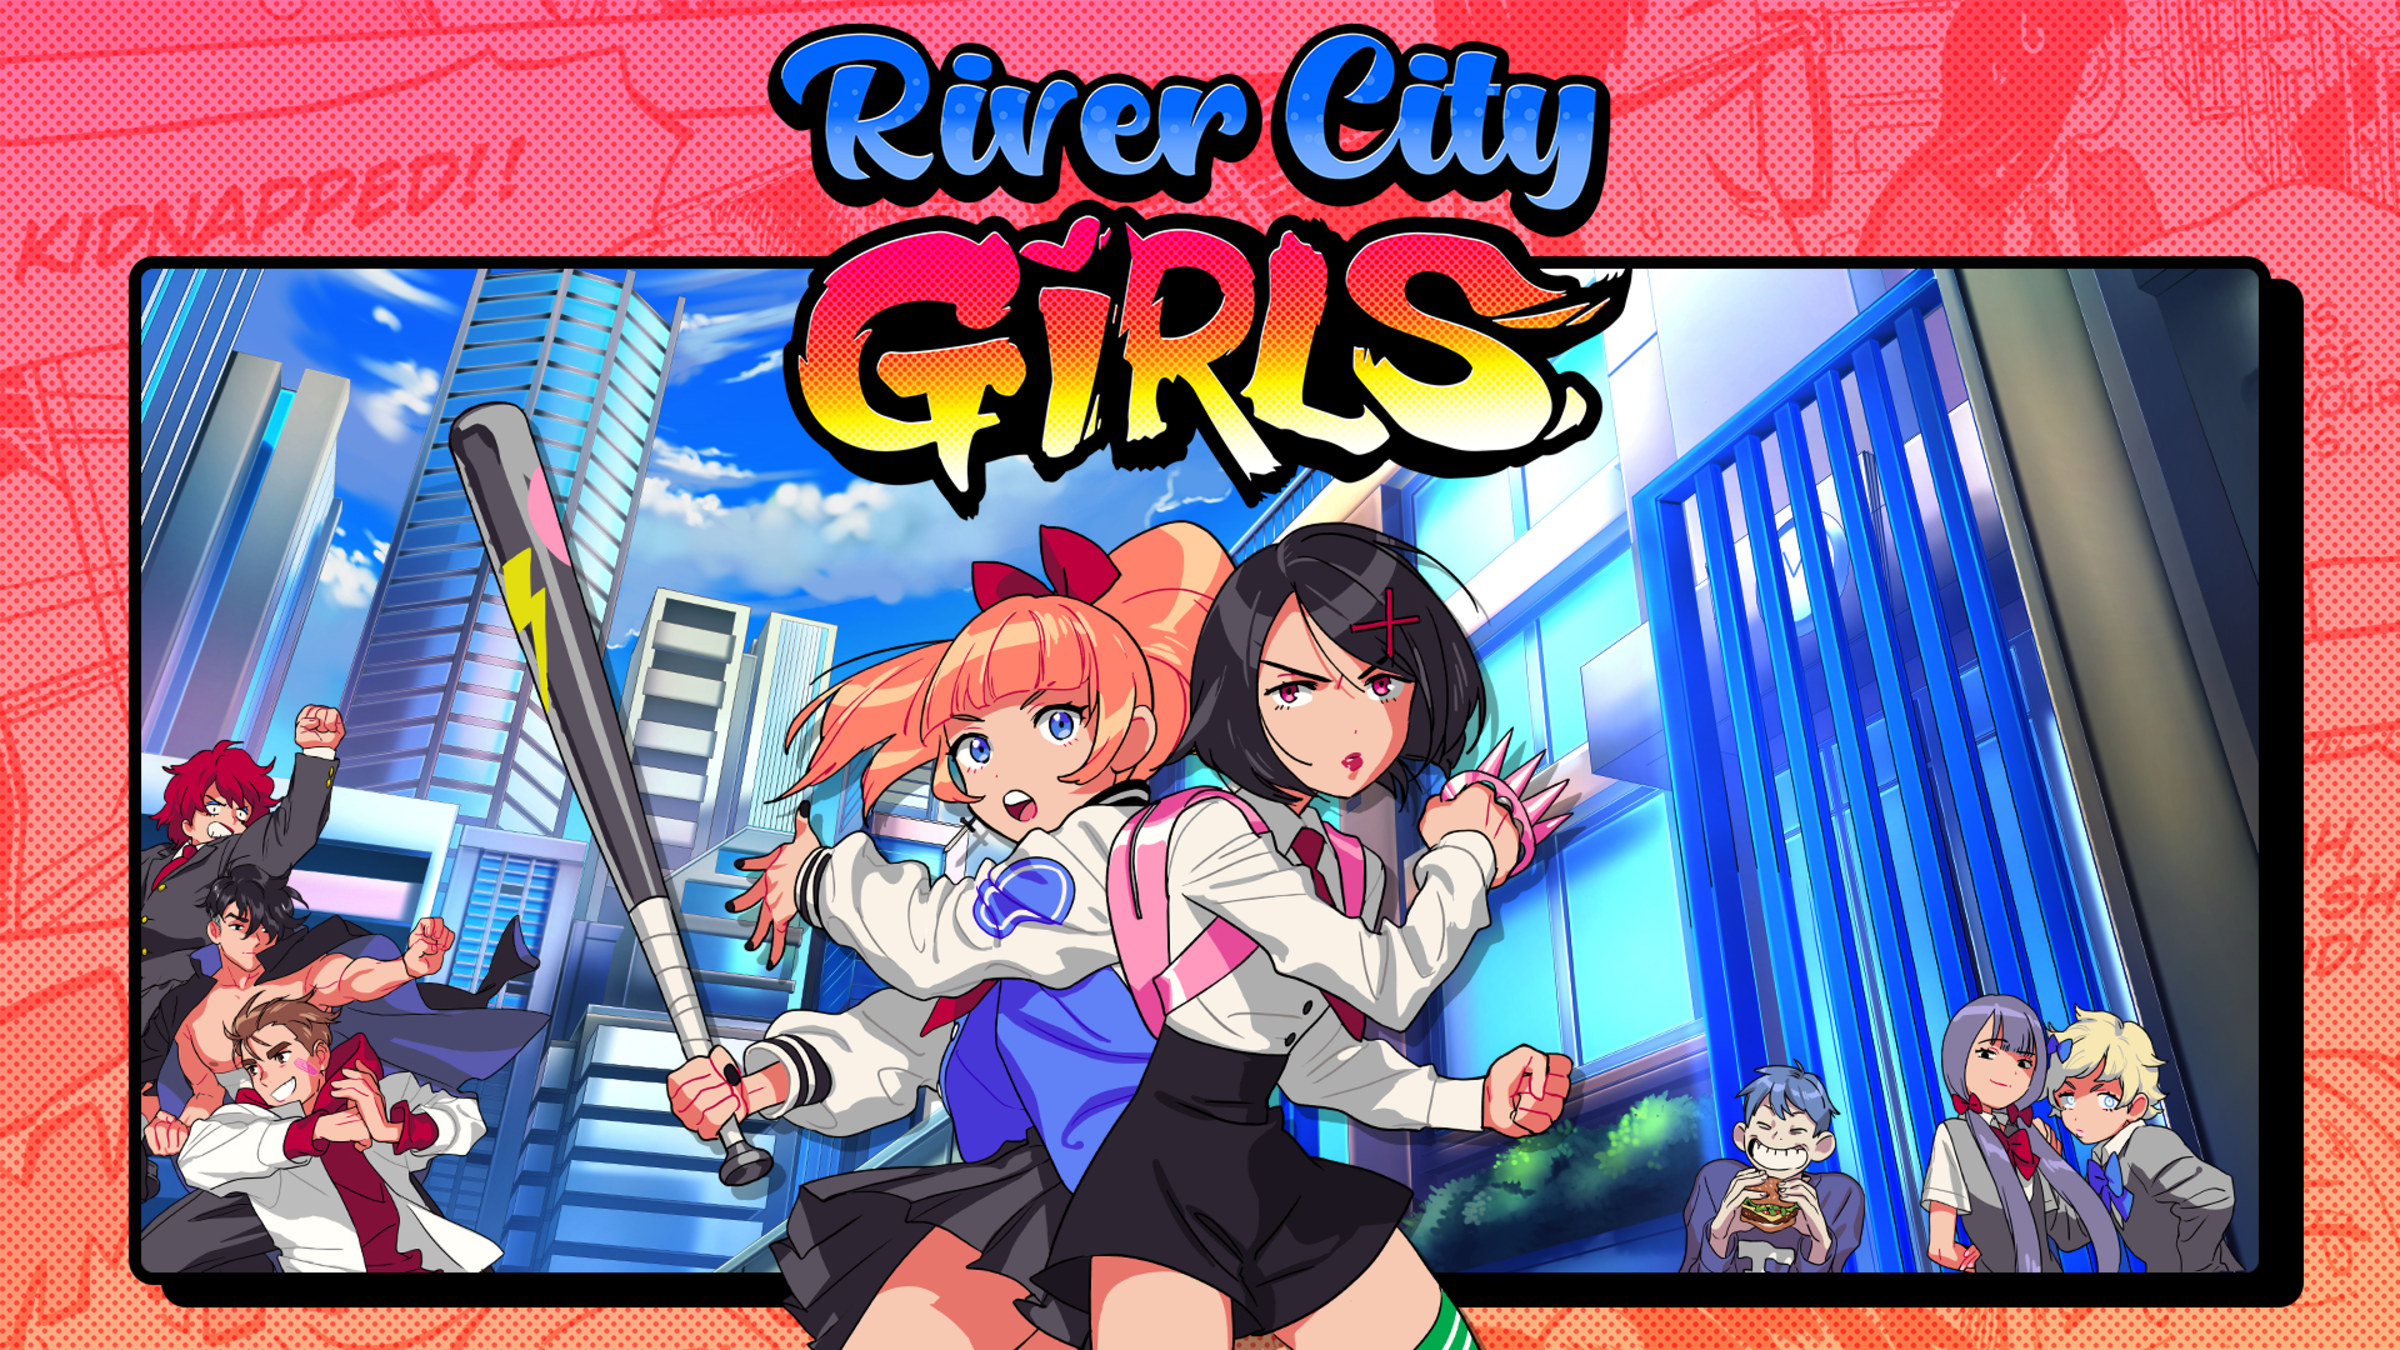 Tanzania Centrum Celebrity River City Girls for Nintendo Switch - Nintendo Official Site